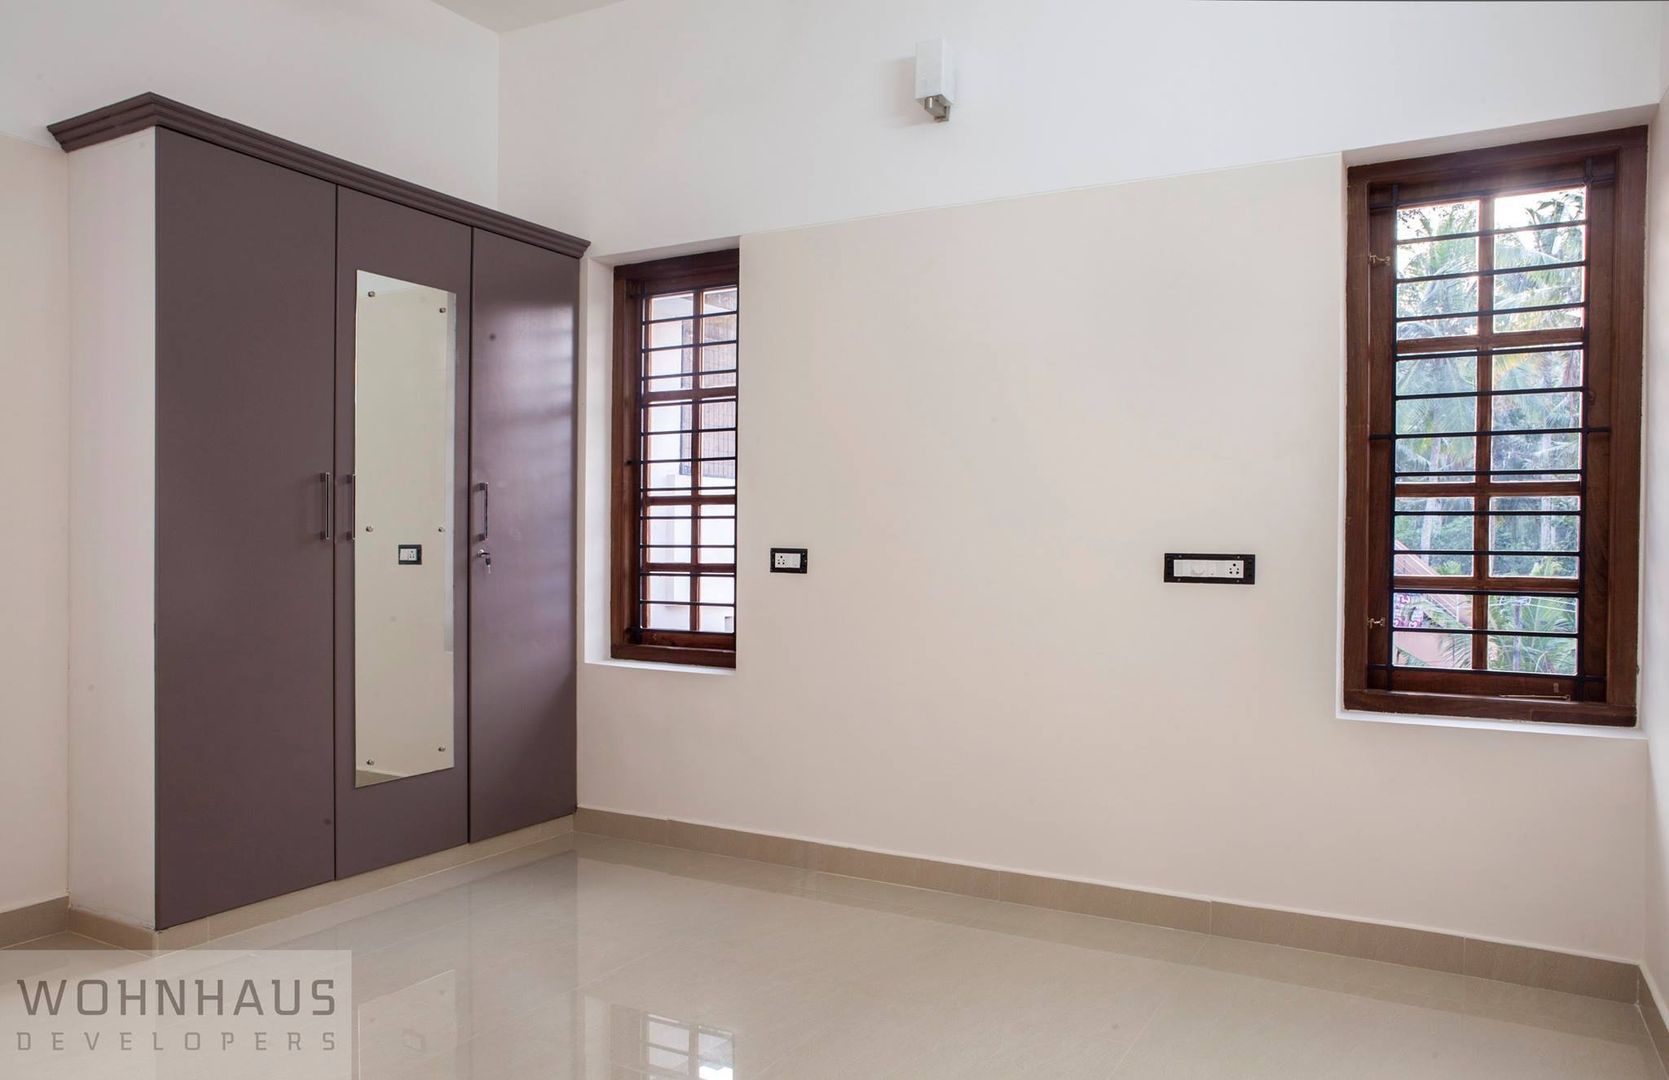 1400sqft House in Trivandrum, Wohnhaus Developers Wohnhaus Developers Camera da letto moderna Ceramica